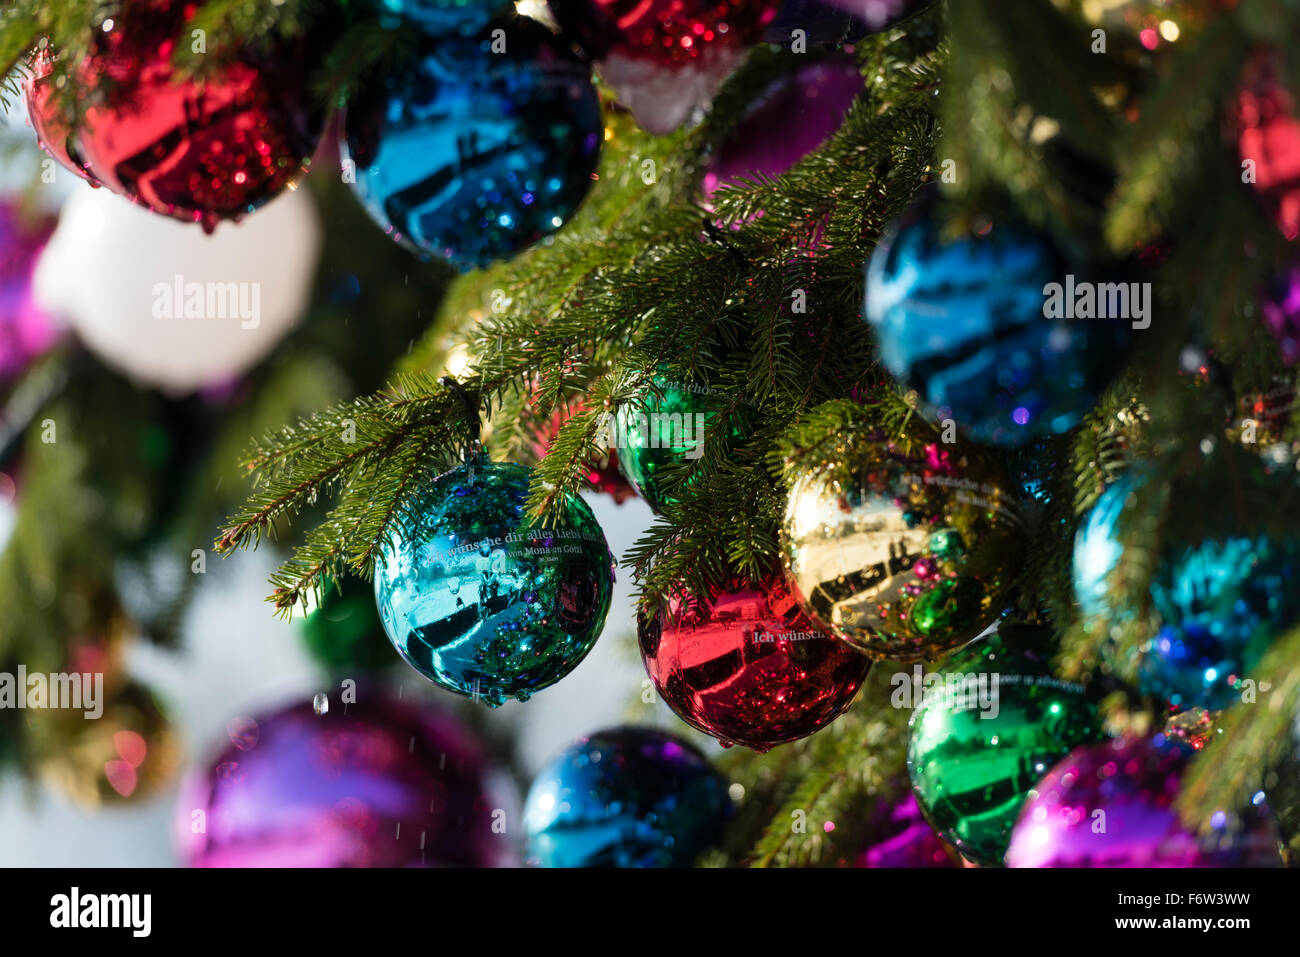 Bunte Weihnachtskugel Ornamente auf einen riesigen Weihnachtsbaum auf  Saechselaeutenplatz, außerhalb Opernhaus Zürich, Schweiz Stockfotografie -  Alamy